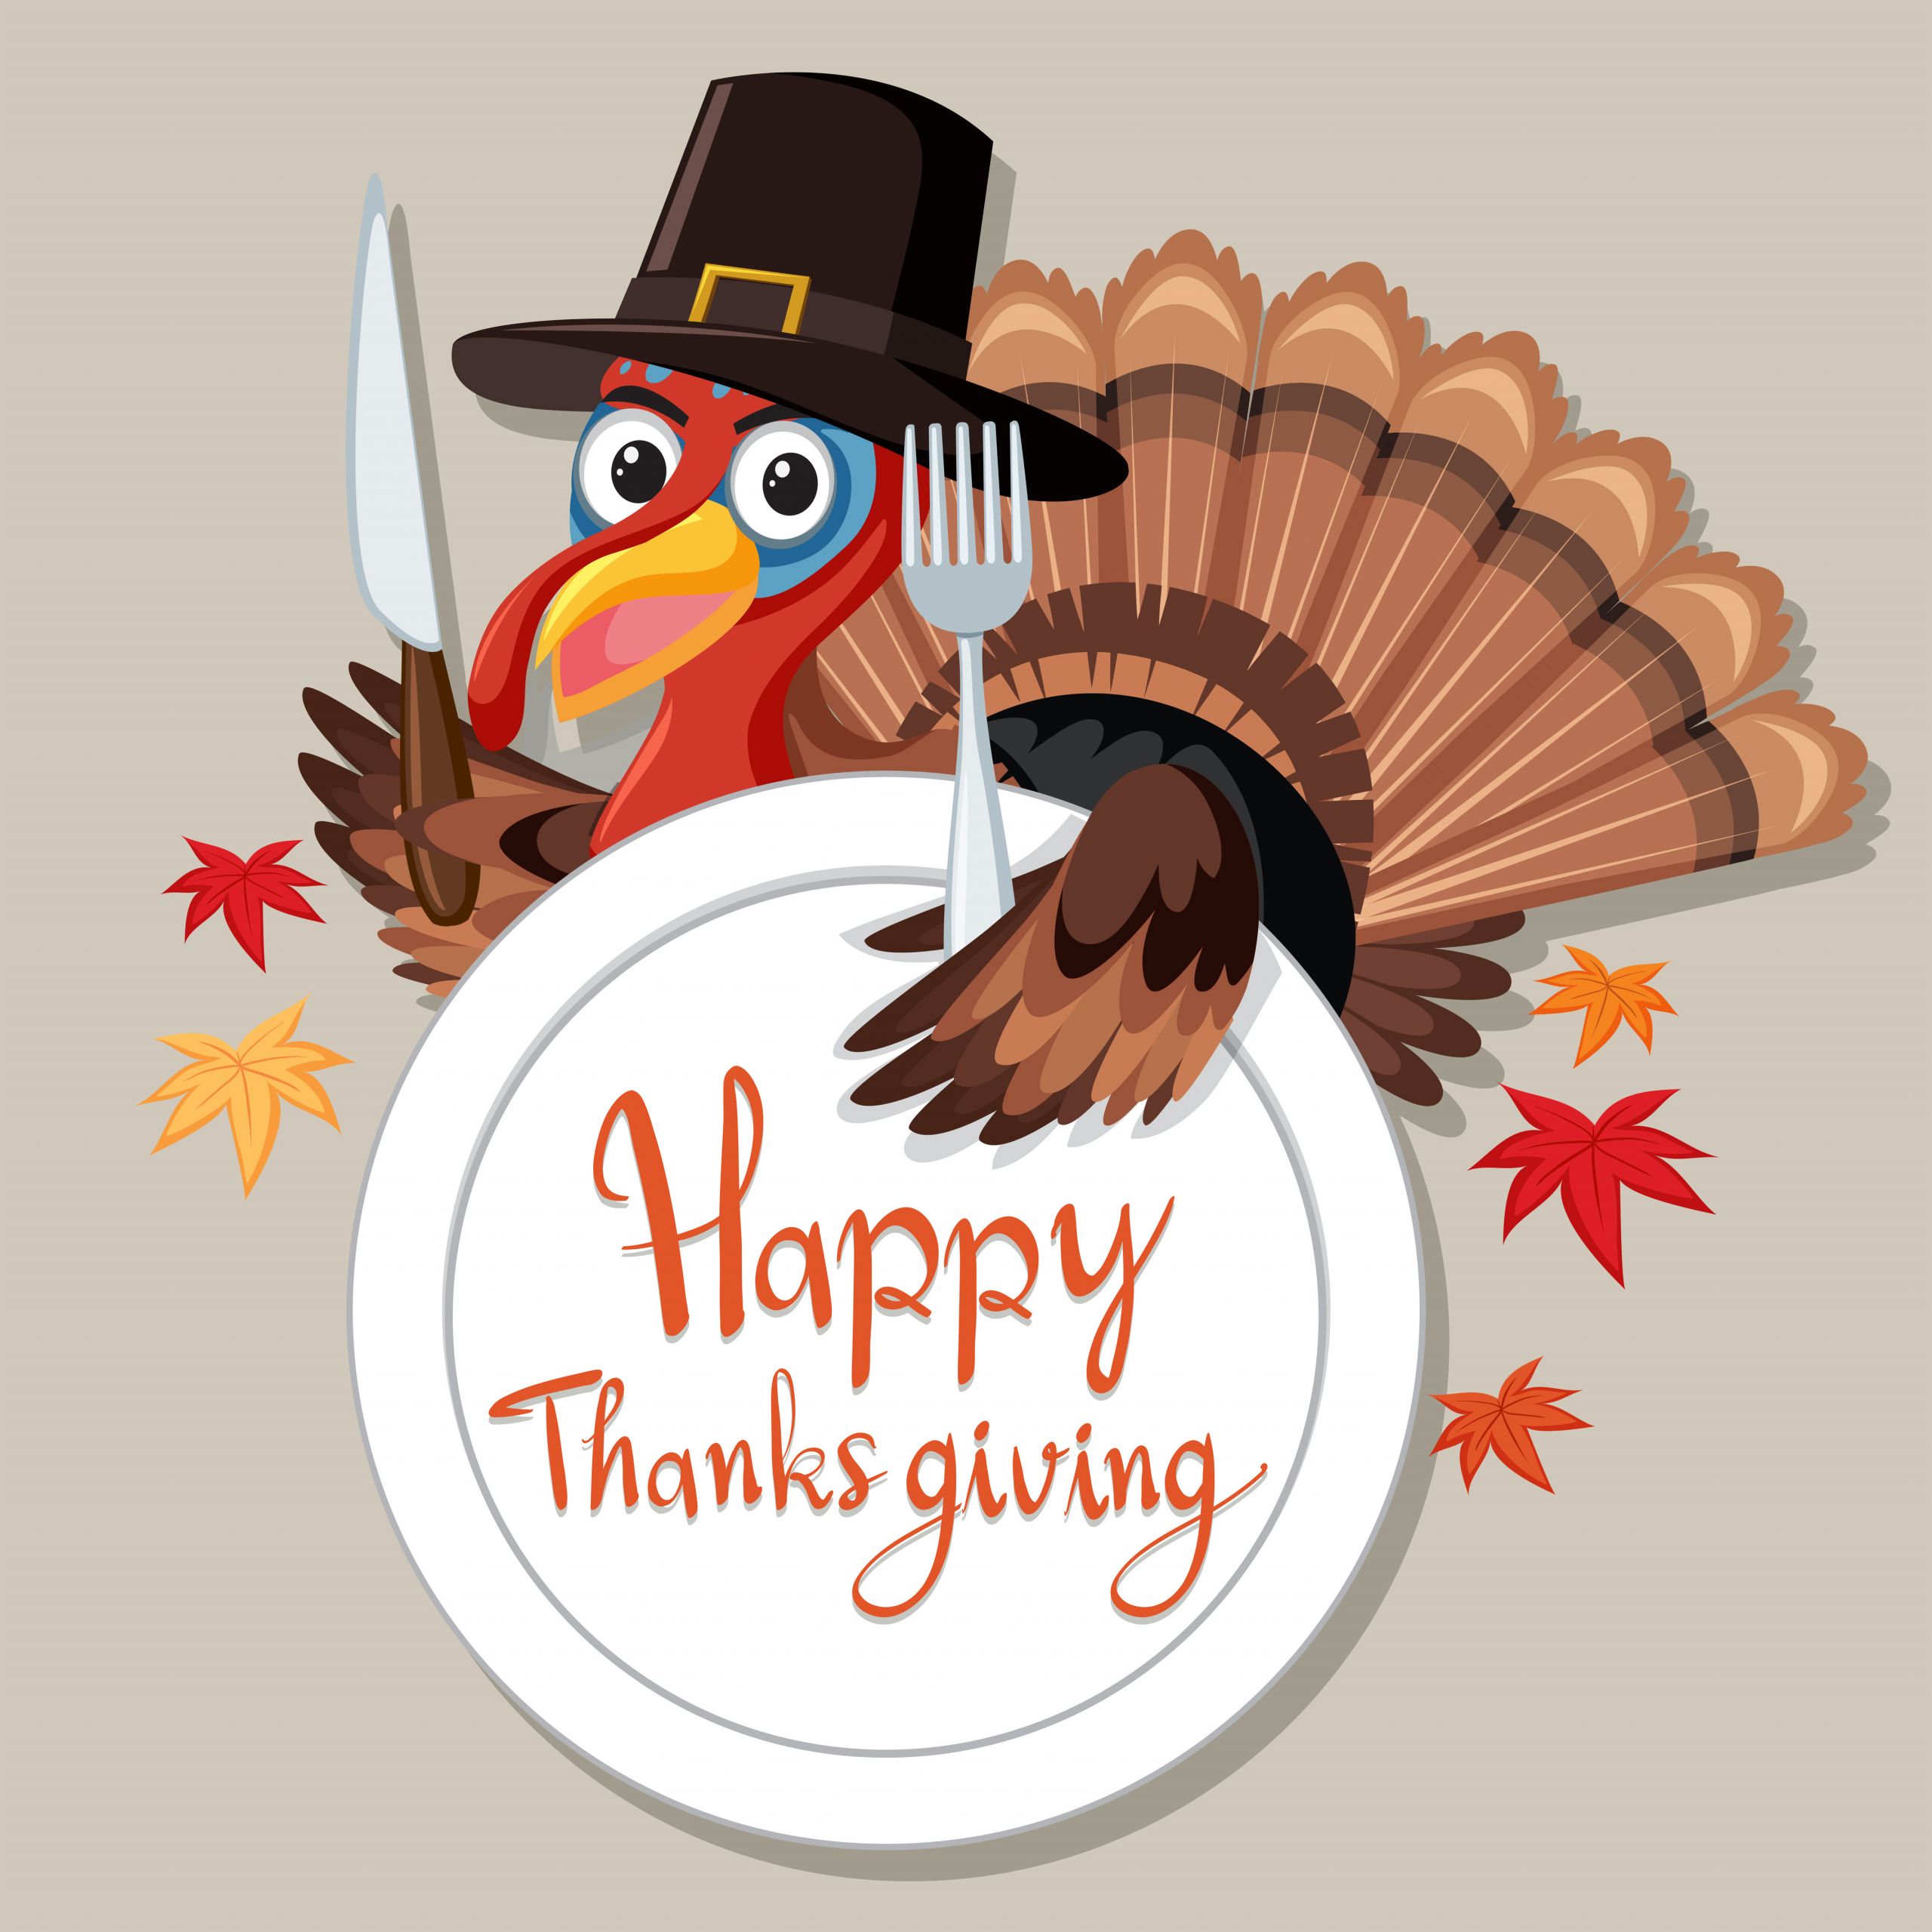 Happy Thanksgiving Turkey
 Happy Thanksgiving turkey card Download Free Vectors